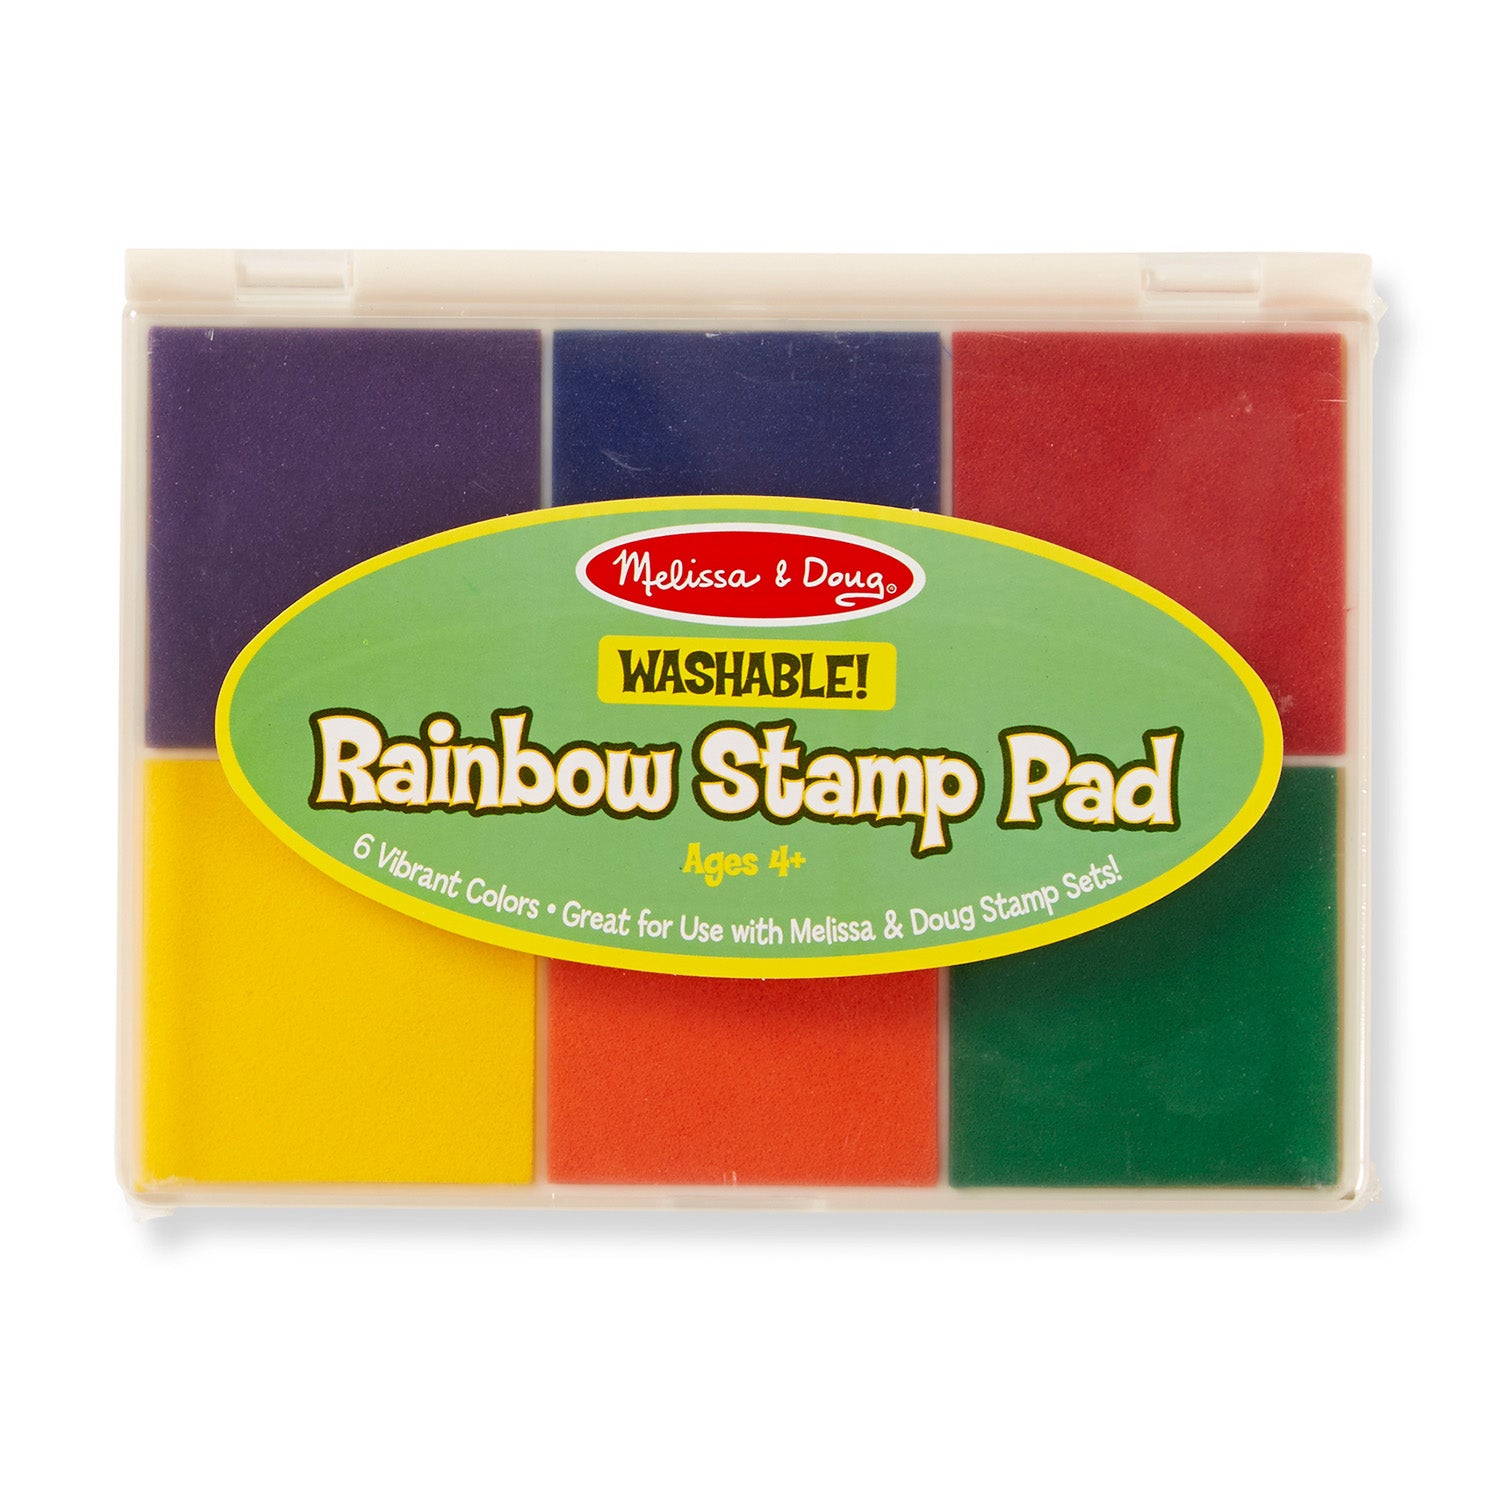 Diy Stamp Pad -How to make Stamp Pad at home/Diy Homemade stamp pad ink/diy  homemade black stamp pad 